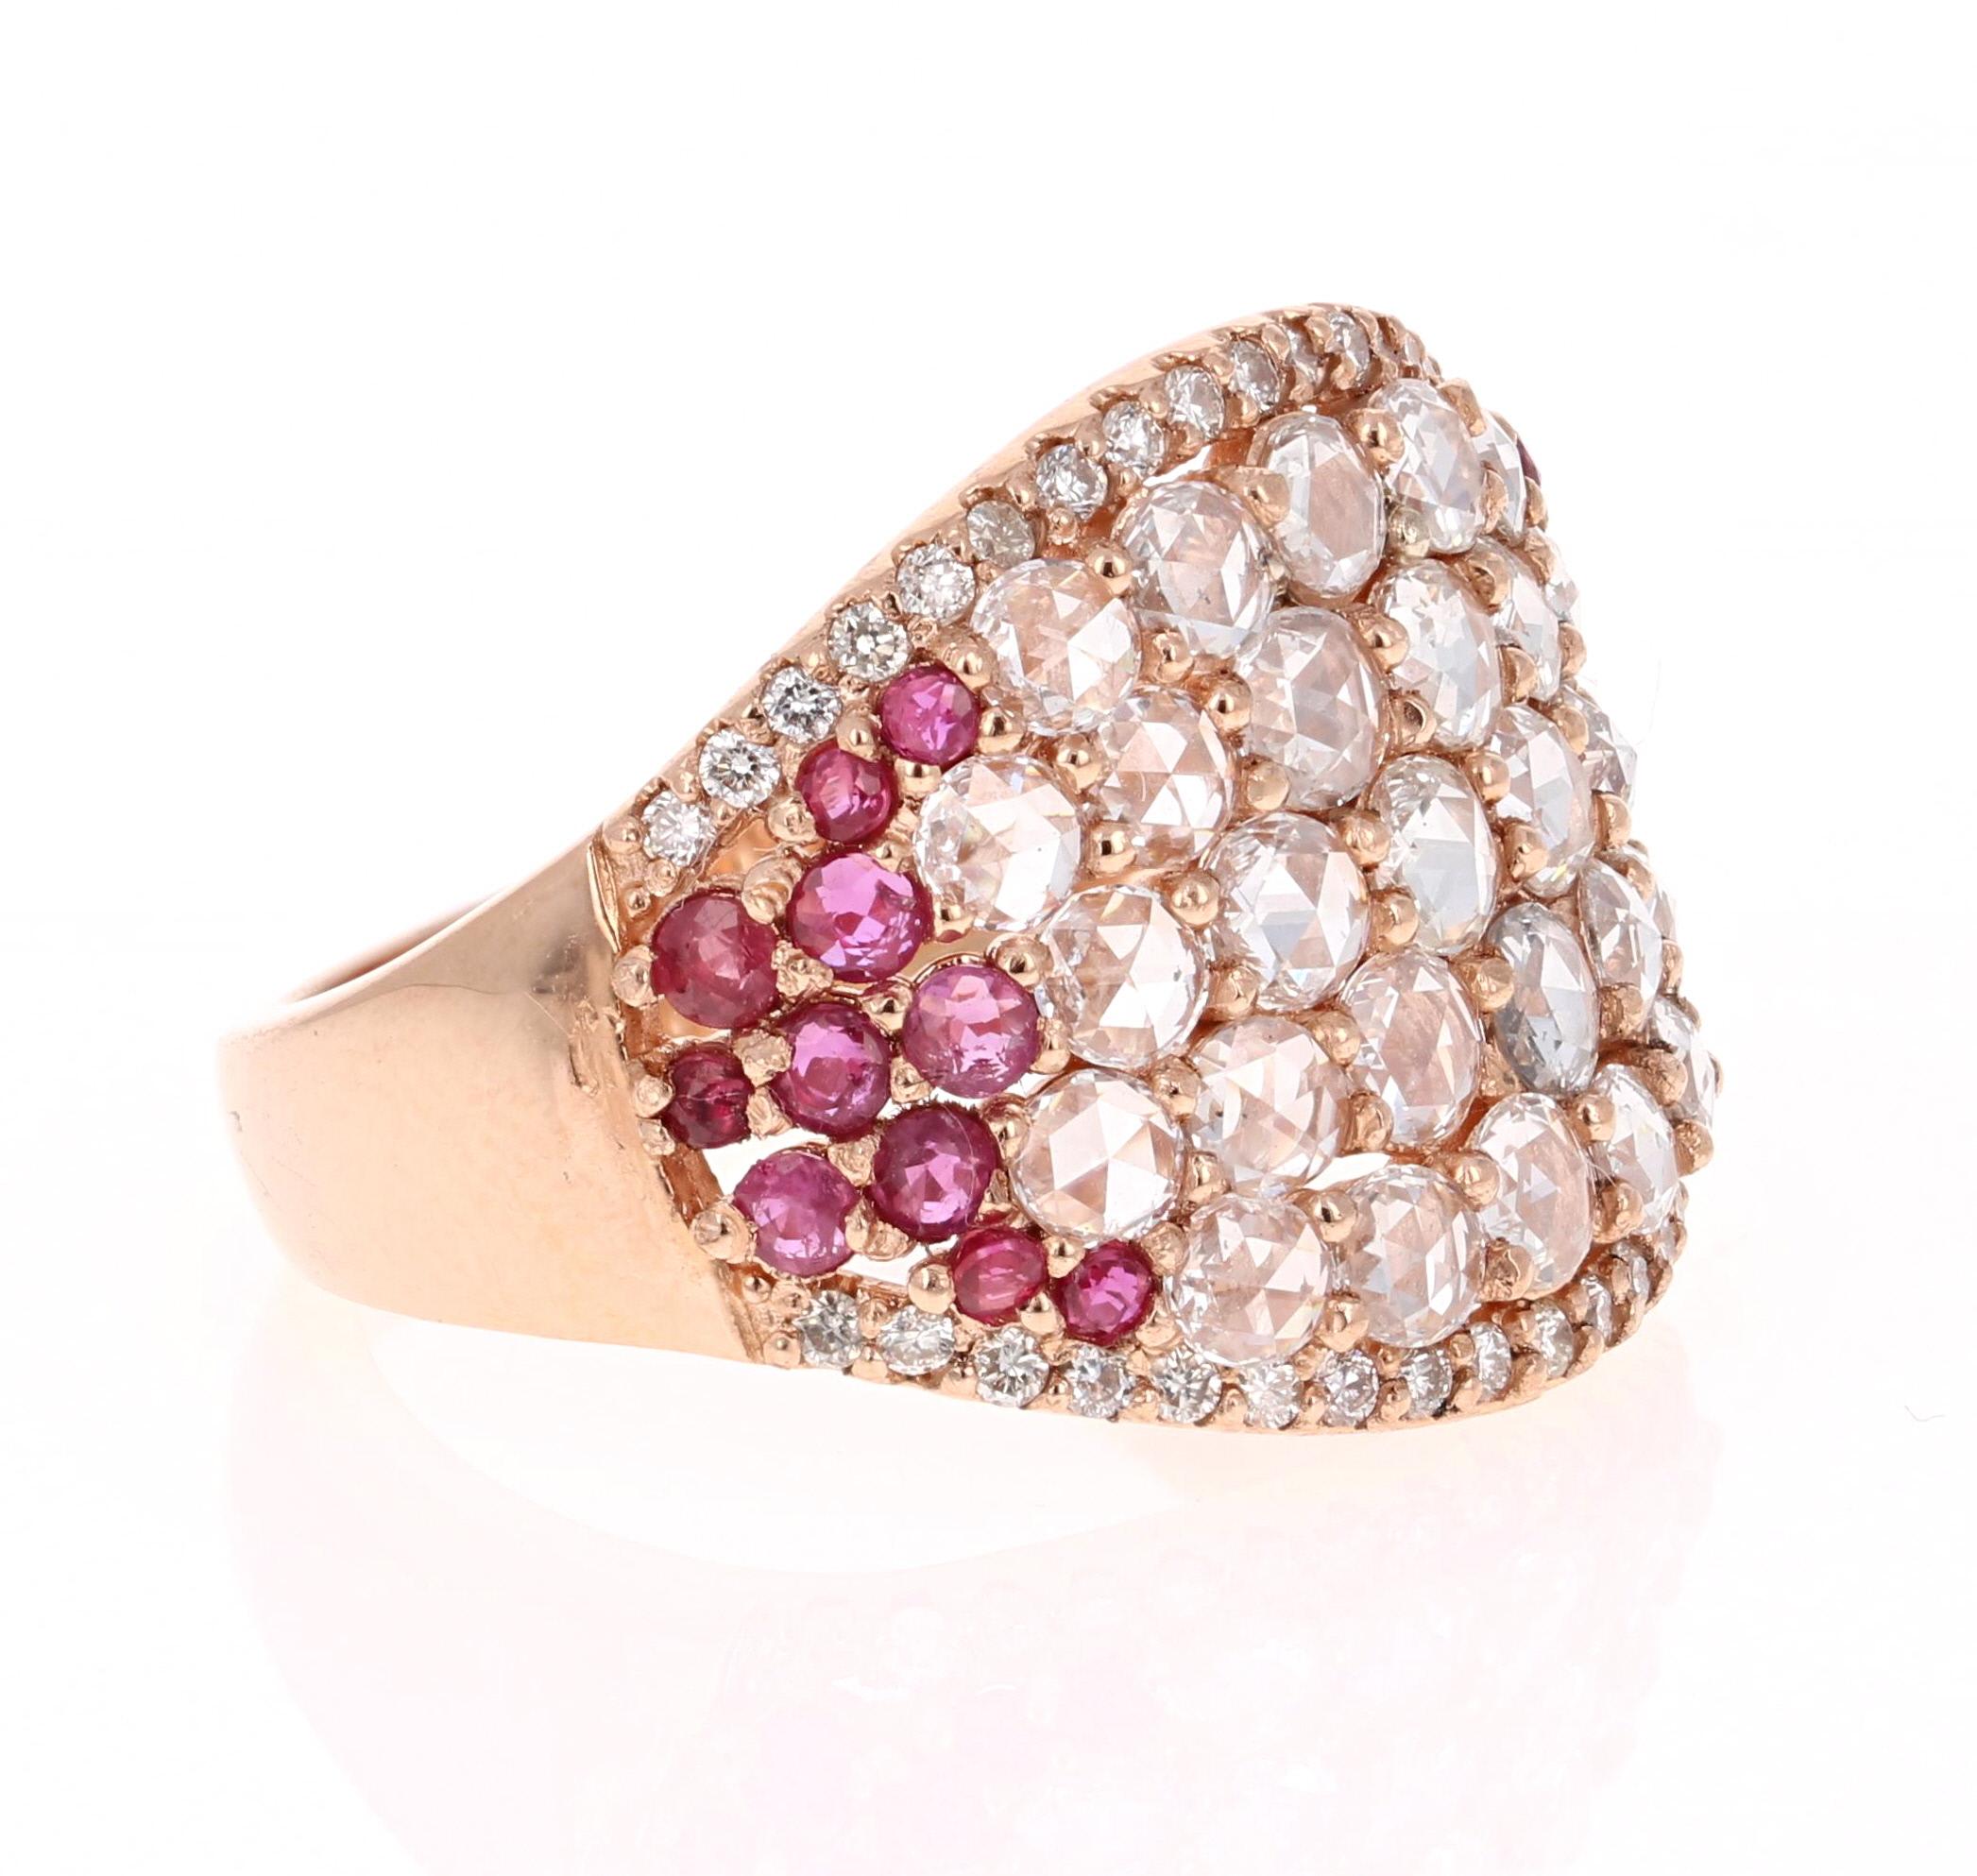 
Cette bague est composée de 28 superbes diamants taille rose qui pèsent 1.41 carats et de 23 rubis taille ronde qui pèsent 0.80 carats. Elle est également ornée de 38 diamants de taille ronde pesant 0,26 carat. Le poids total en carats de la bague